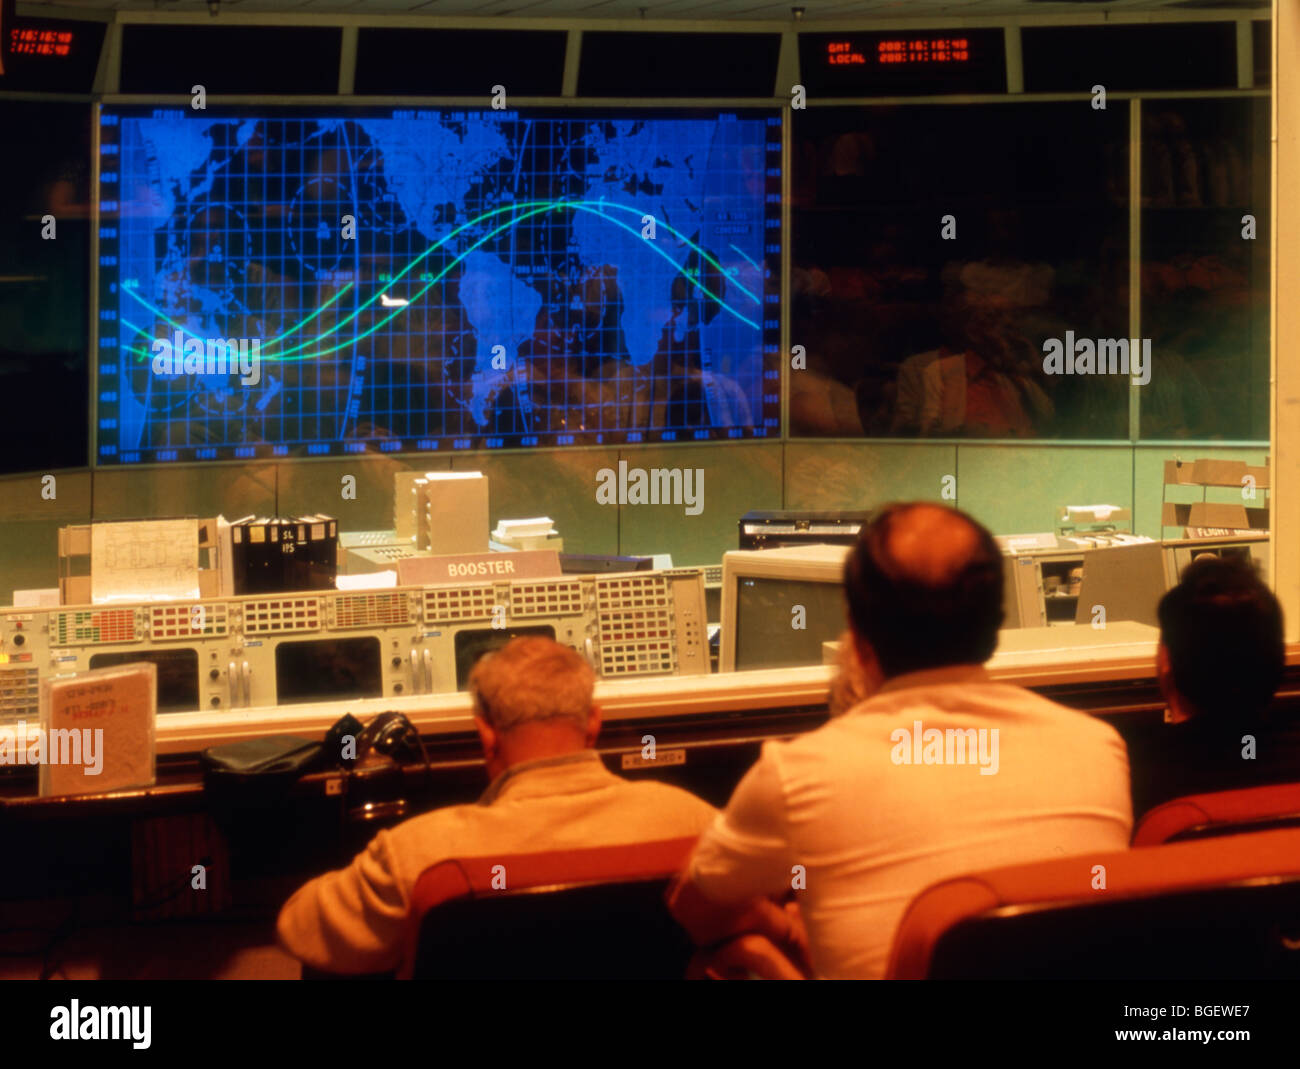 USA Texas Houston NASA Space center Mission Control Stock Photo